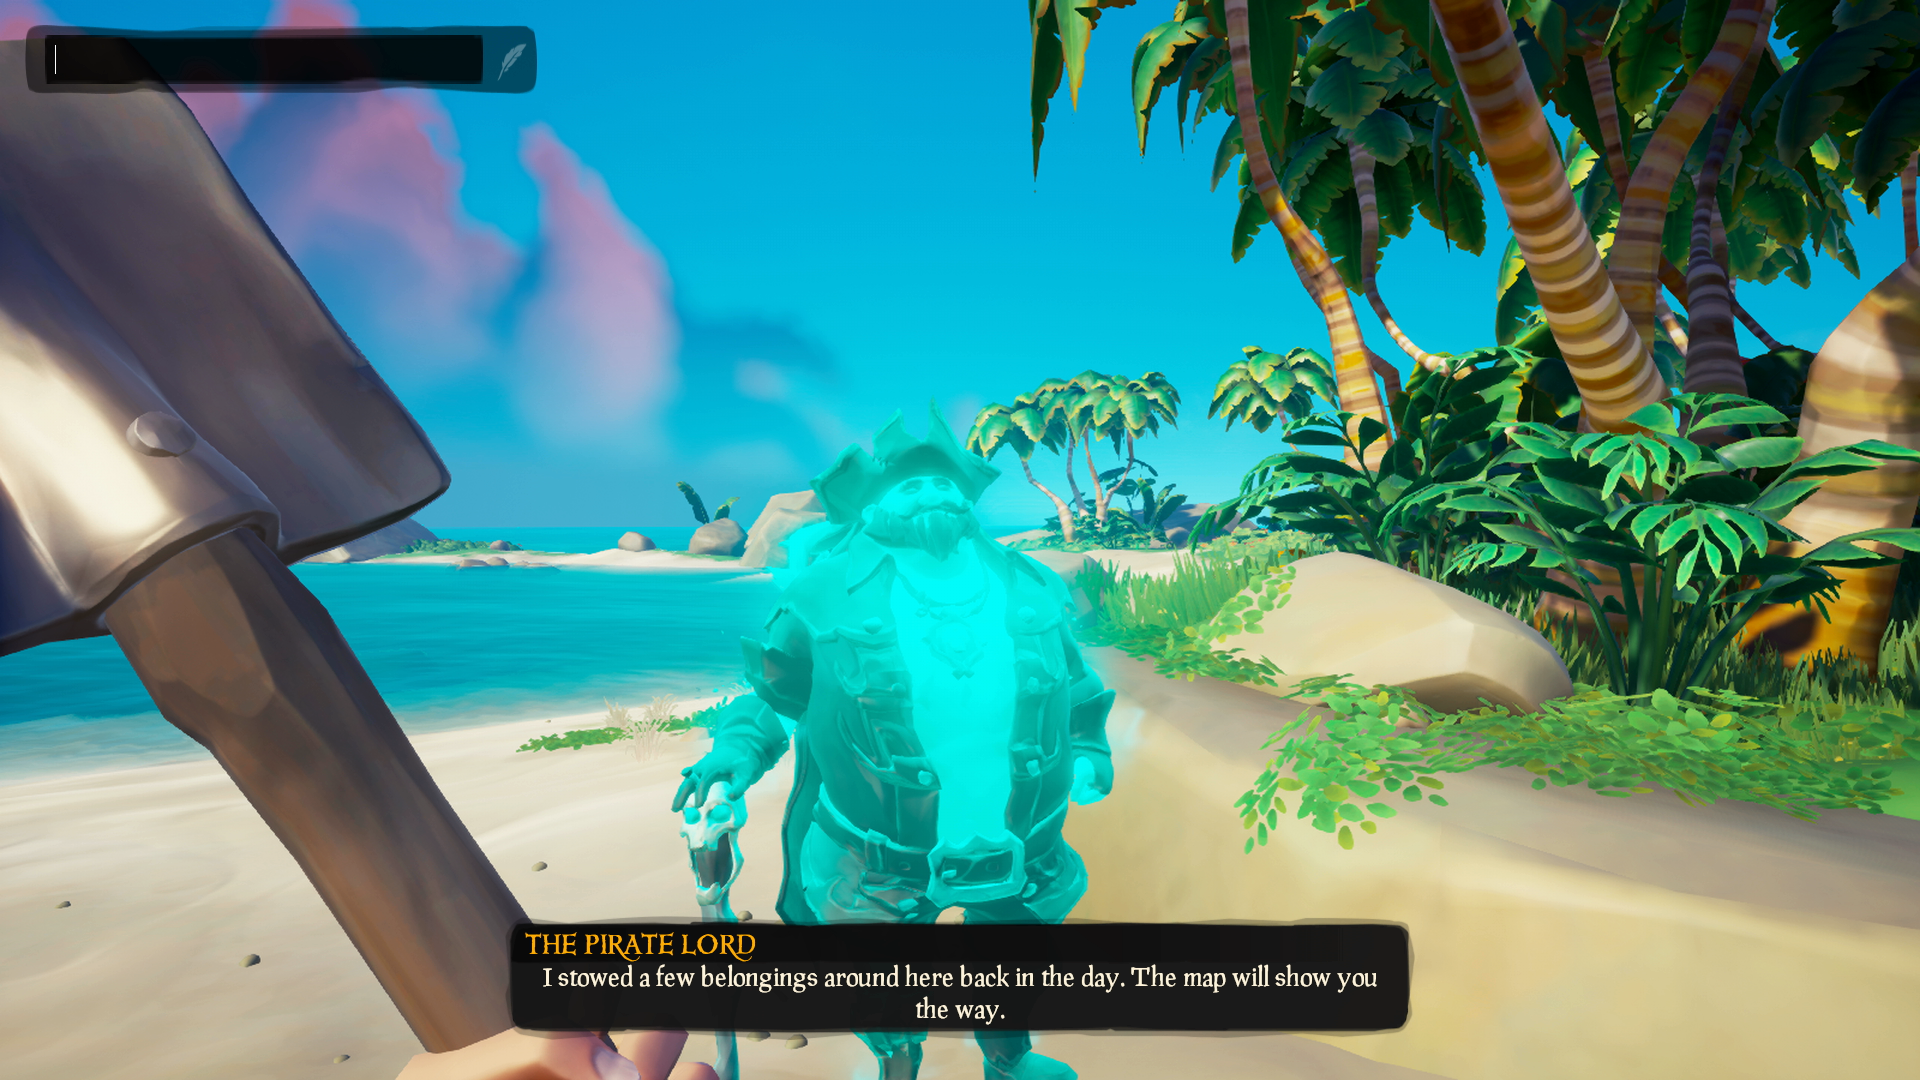 Sea of Thieves のゲームプレイ画面。中央に海岸線にたたずむ海賊が光っていて、